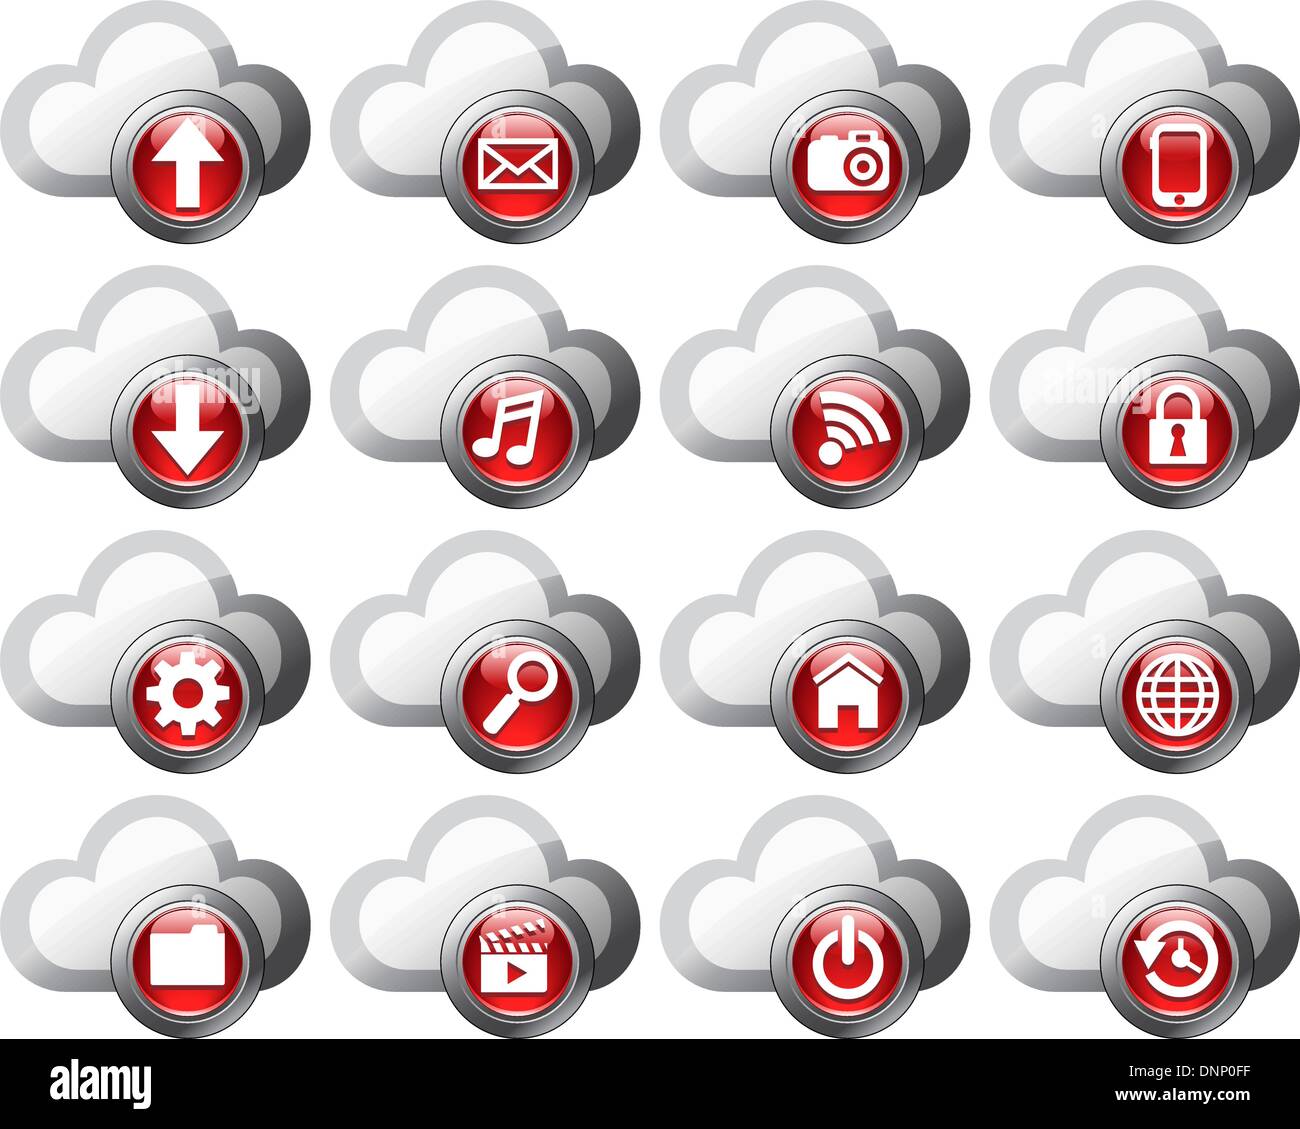 Virtuelle Cloud Icons hochladen, herunterladen, Ordner, Bilder, Film, Video, Musik, e-Mail, Handy-Anschluss, Wiederherstellung, Sicherung und Stock Vektor